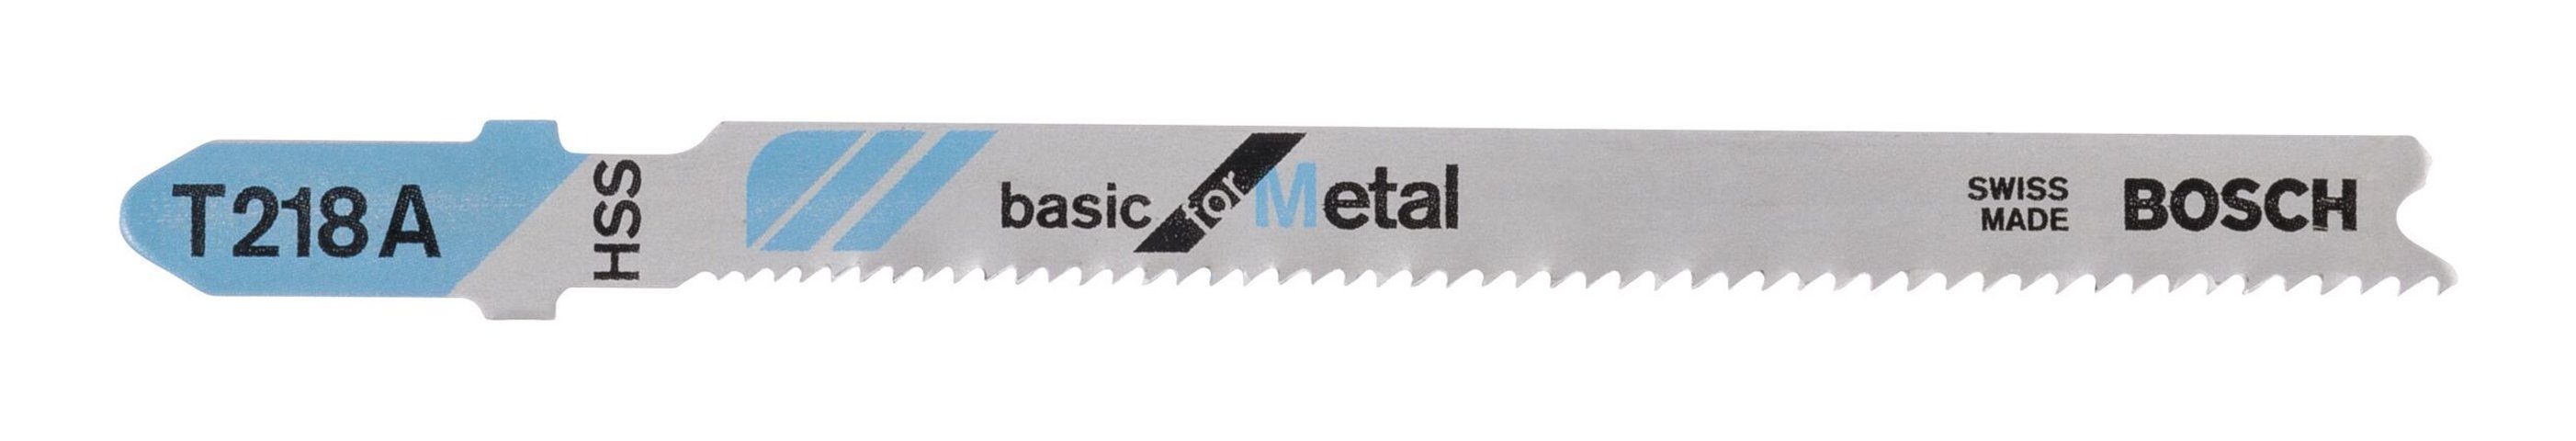 BOSCH Stichsägeblatt (3 Stück), T 218 A Basic for Metal - 3er-Pack | Stichsägeblätter